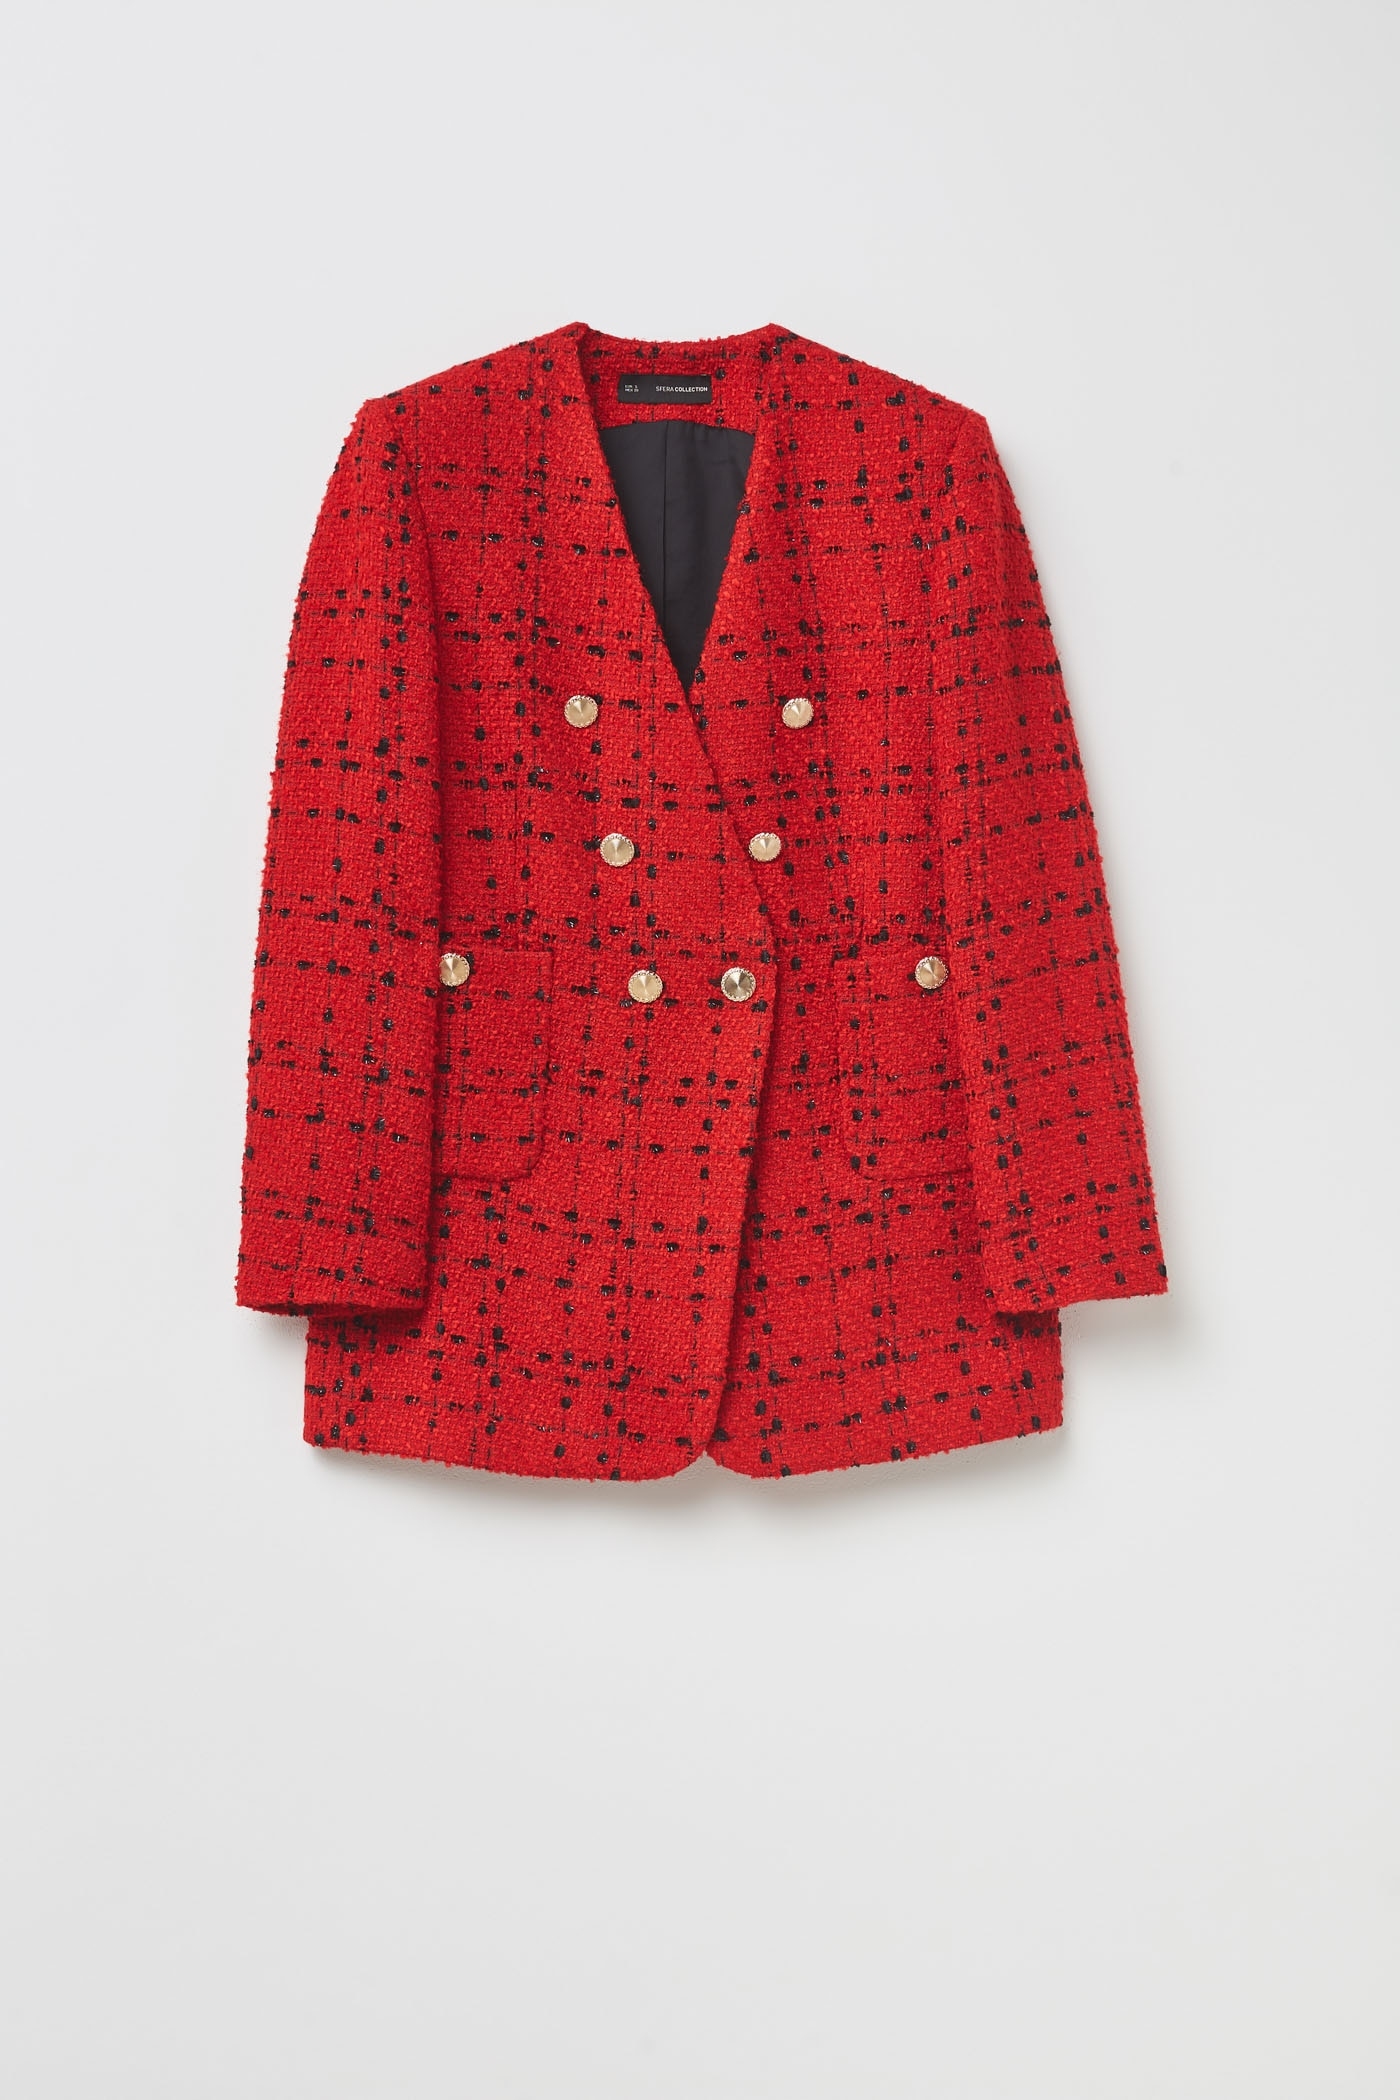 Sfera tiene una chaqueta que parece una copia de la Yves Saint Laurent de 3.000 euros por muy poco dinero.